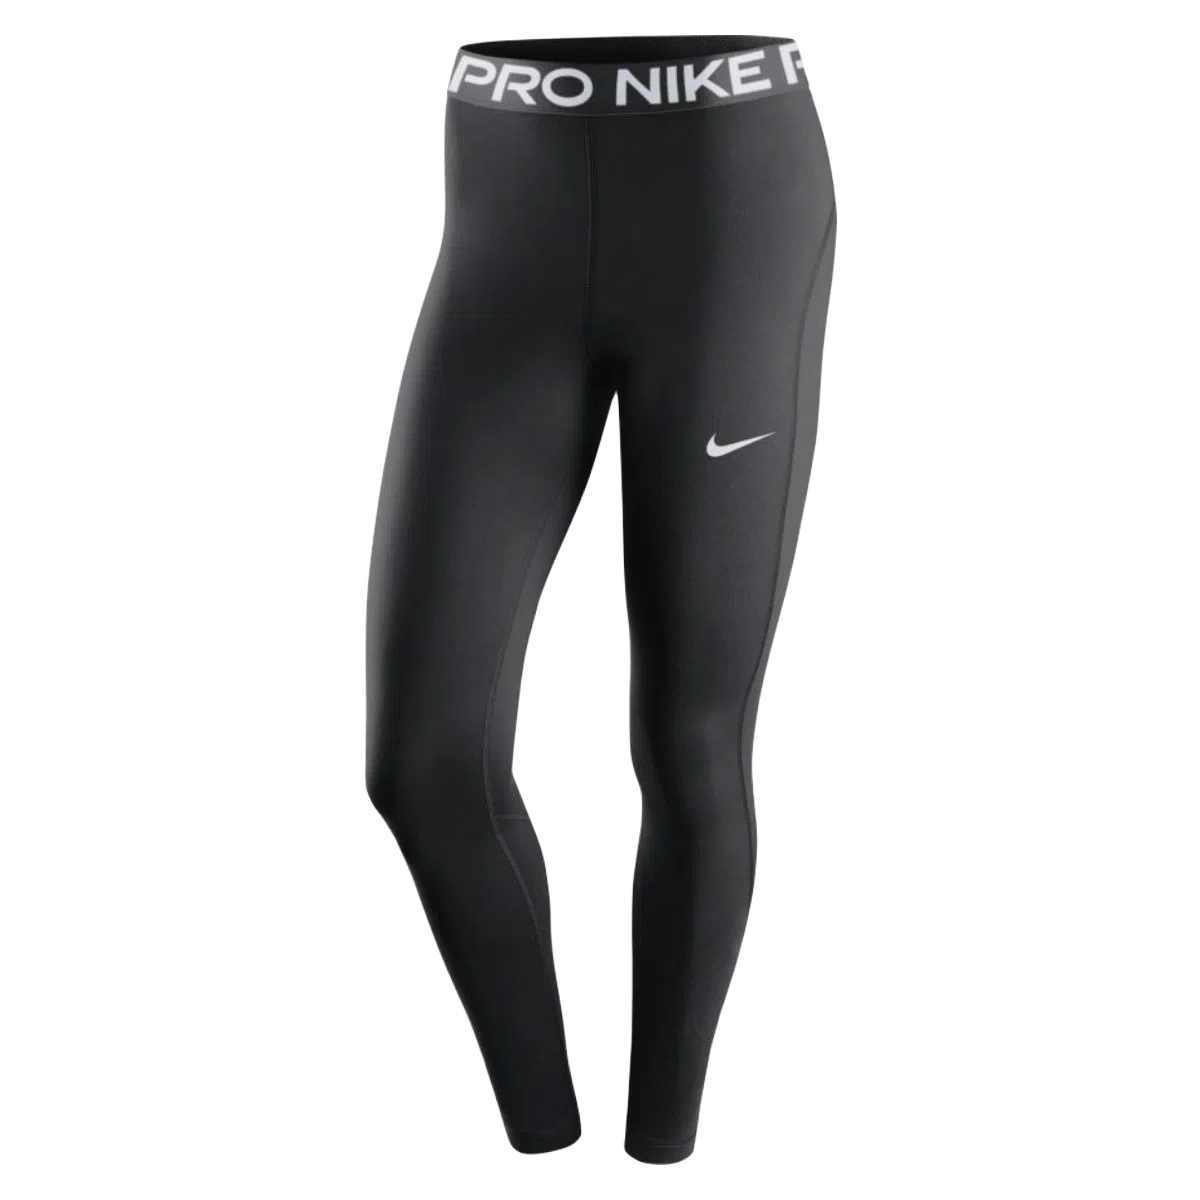 Nike leggings for women